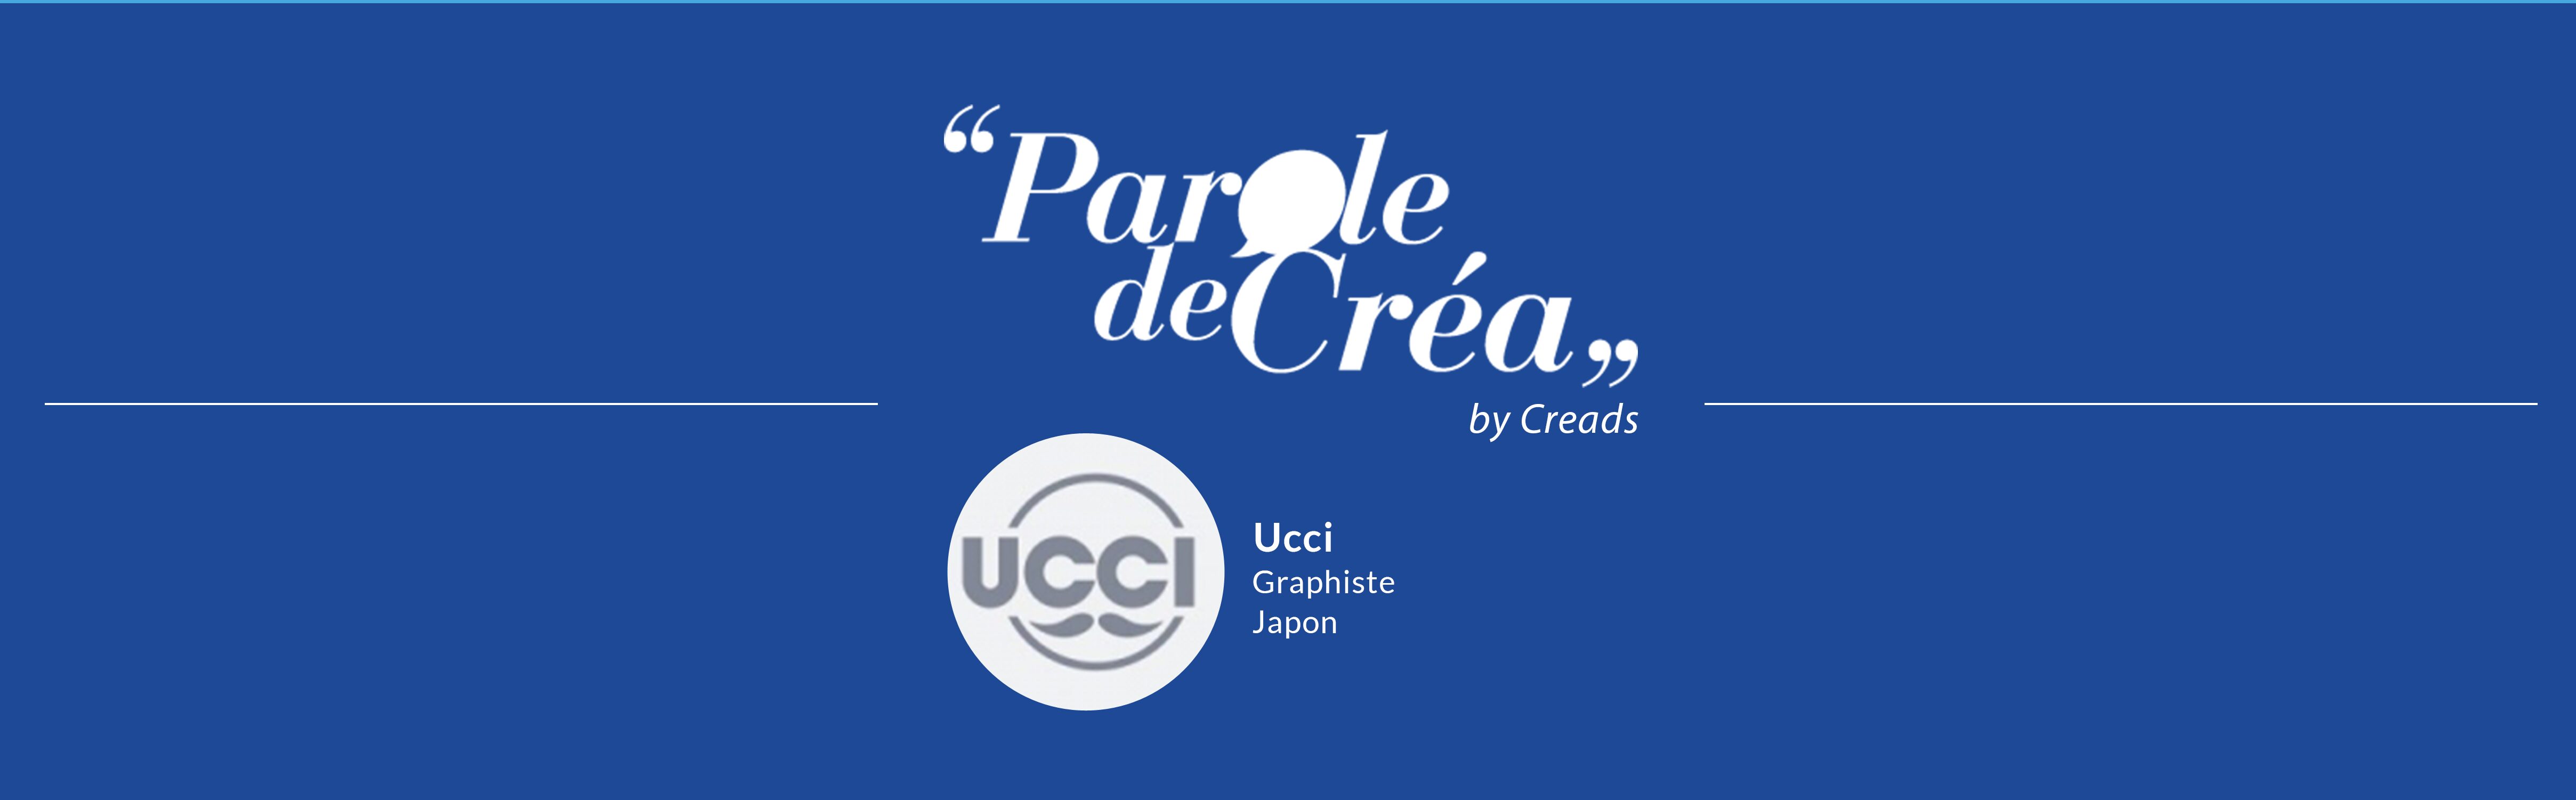 Paroles de Créa – Découvrez l’interview de @Ucci !